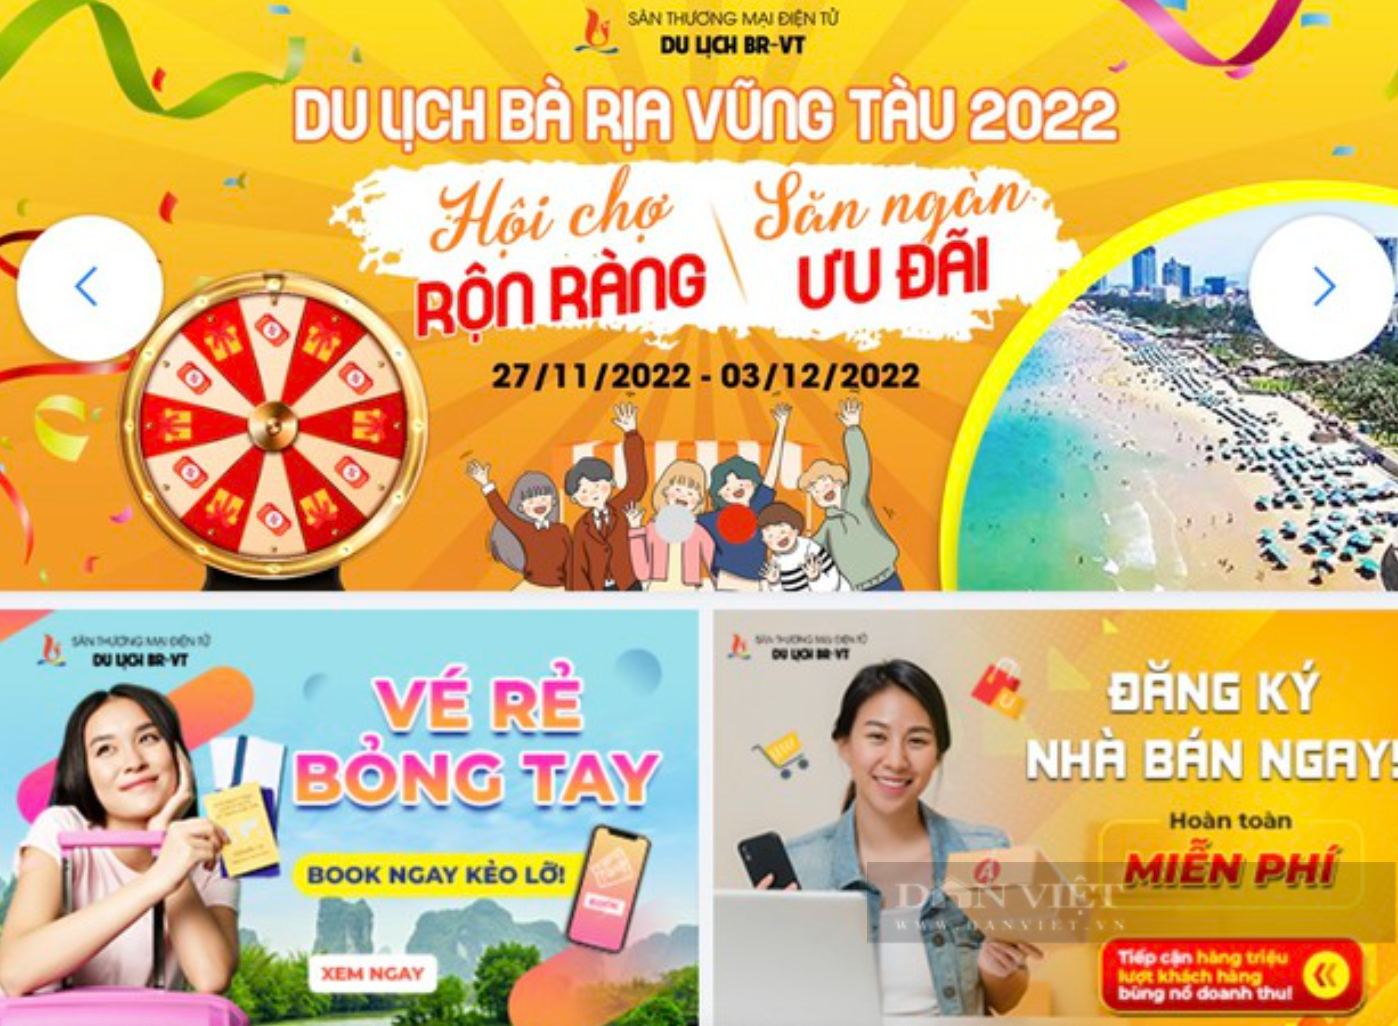 Bà Rịa - Vũng Tàu: Tăng tốc hút khách du lịch cuối năm bằng 1.500 sản phẩm du lịch giá “siêu hấp dẫn” - Ảnh 3.